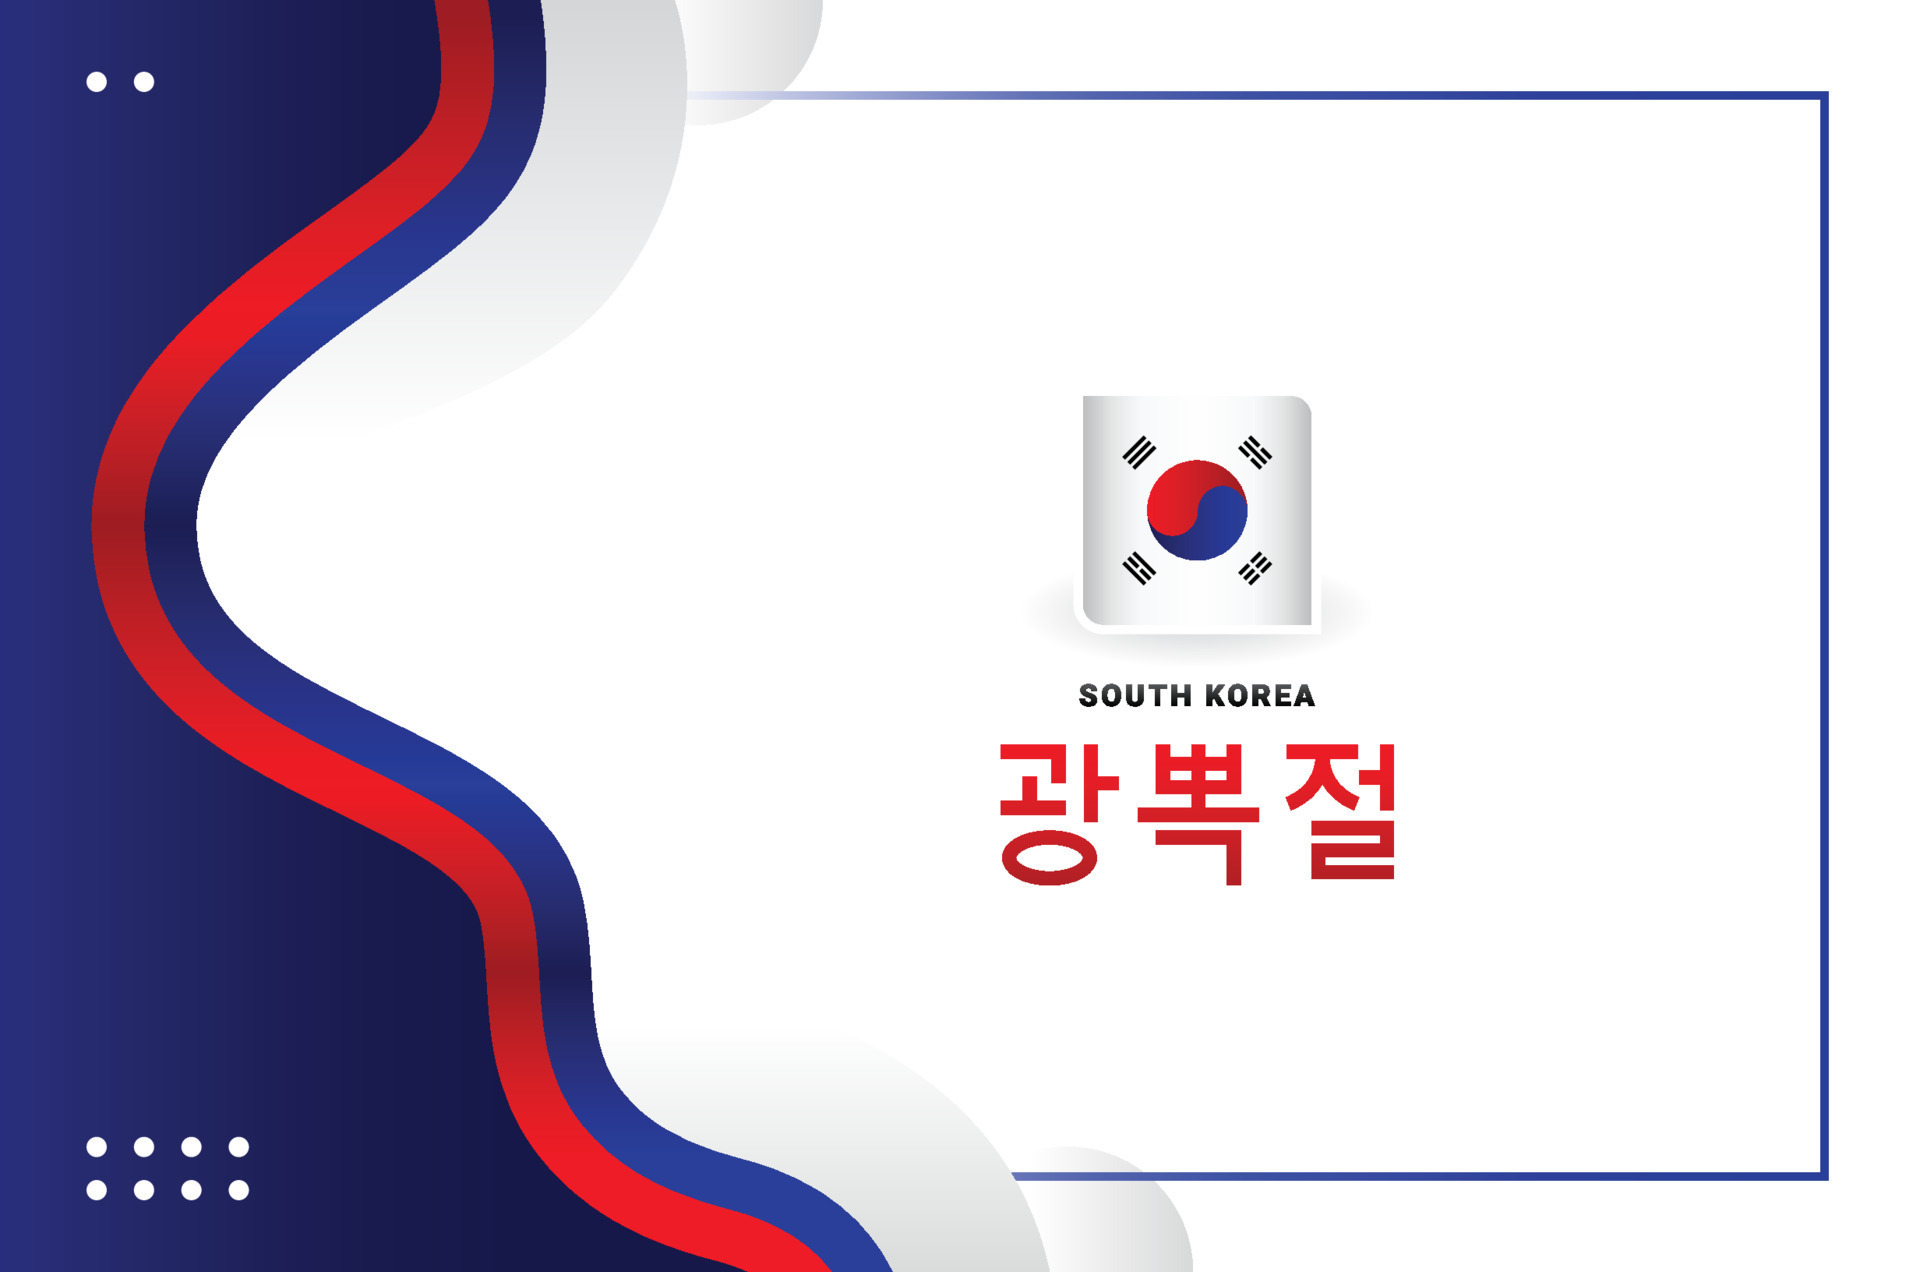 Thiết kế ngày giải phóng Hàn Quốc mang đến một sự kết hợp tuyệt vời giữa các yếu tố truyền thống và hiện đại. Được biểu thị qua các màu sắc rực rỡ, những họa tiết truyền thống và các ý tưởng độc đáo, các hình ảnh liên quan sẽ khiến bạn phấn khích về sự kiện quan trọng này của đất nước Hàn Quốc.